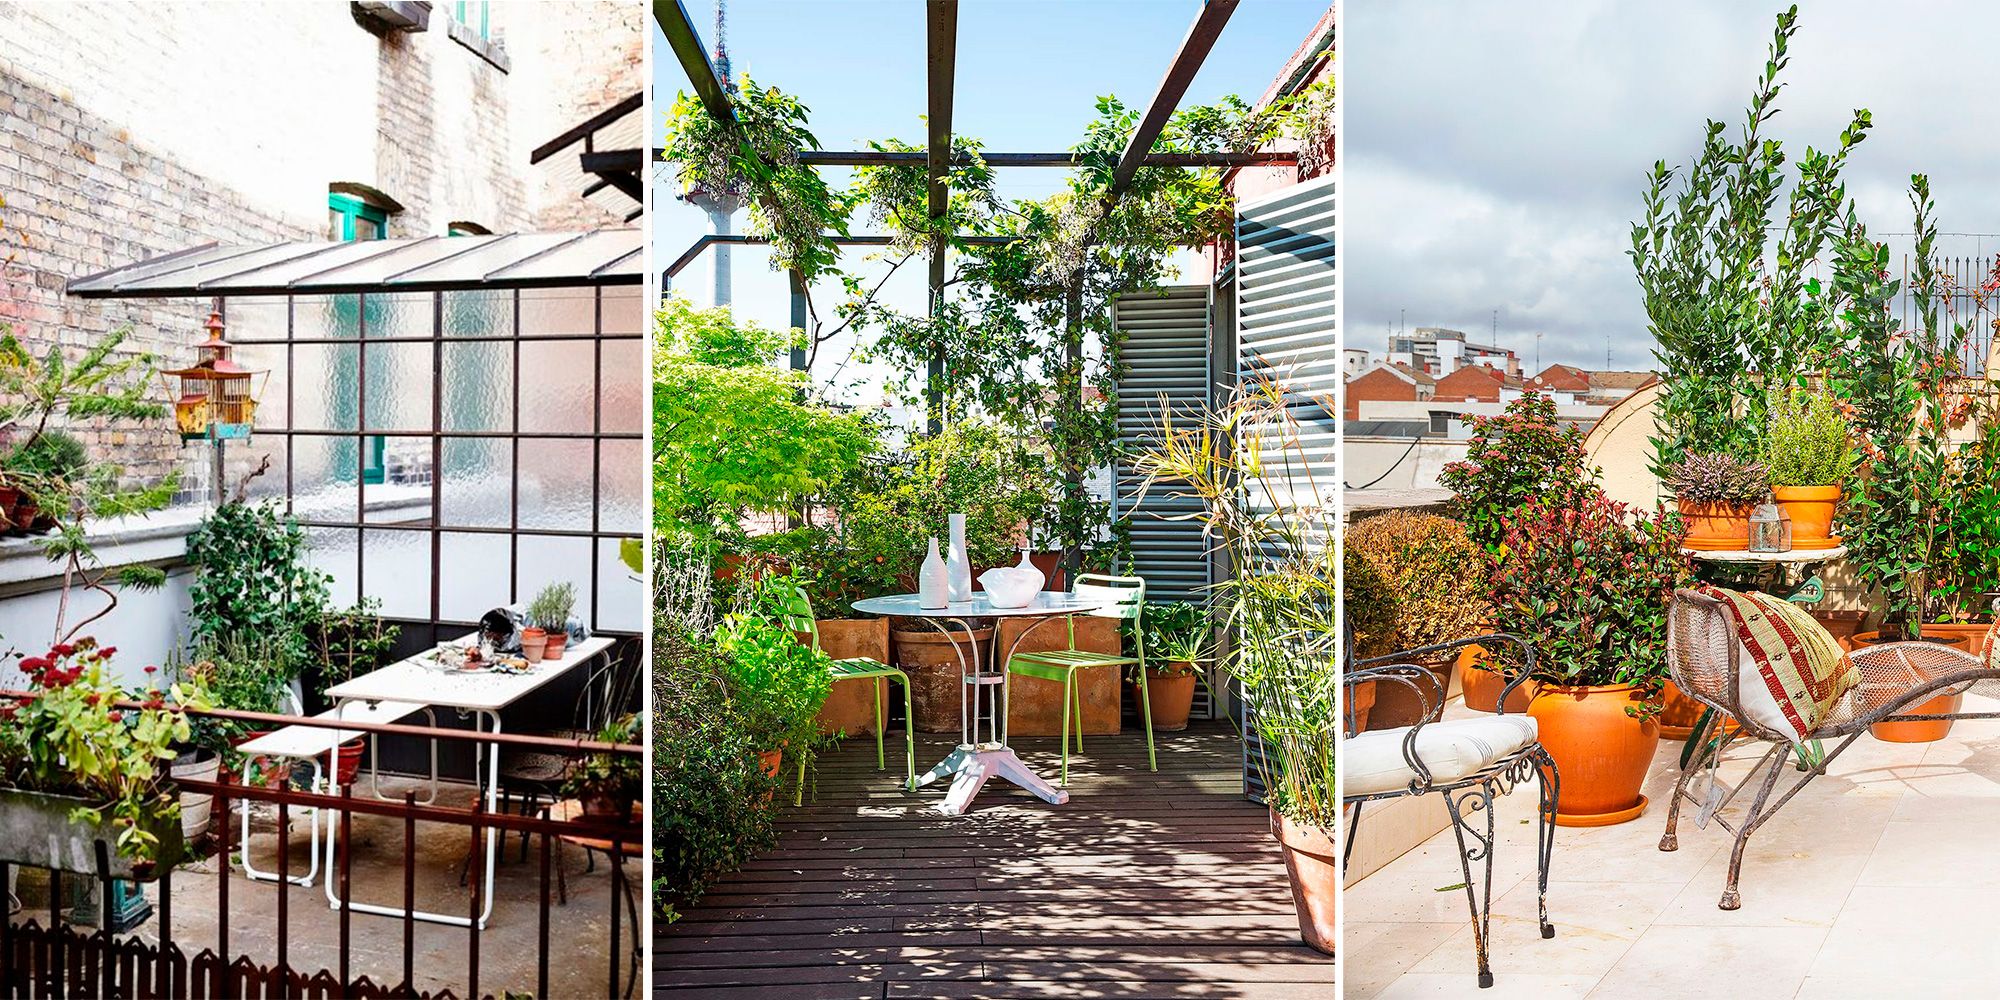 Nueve divertidas ideas para decorar tu terraza, patio o jardín con